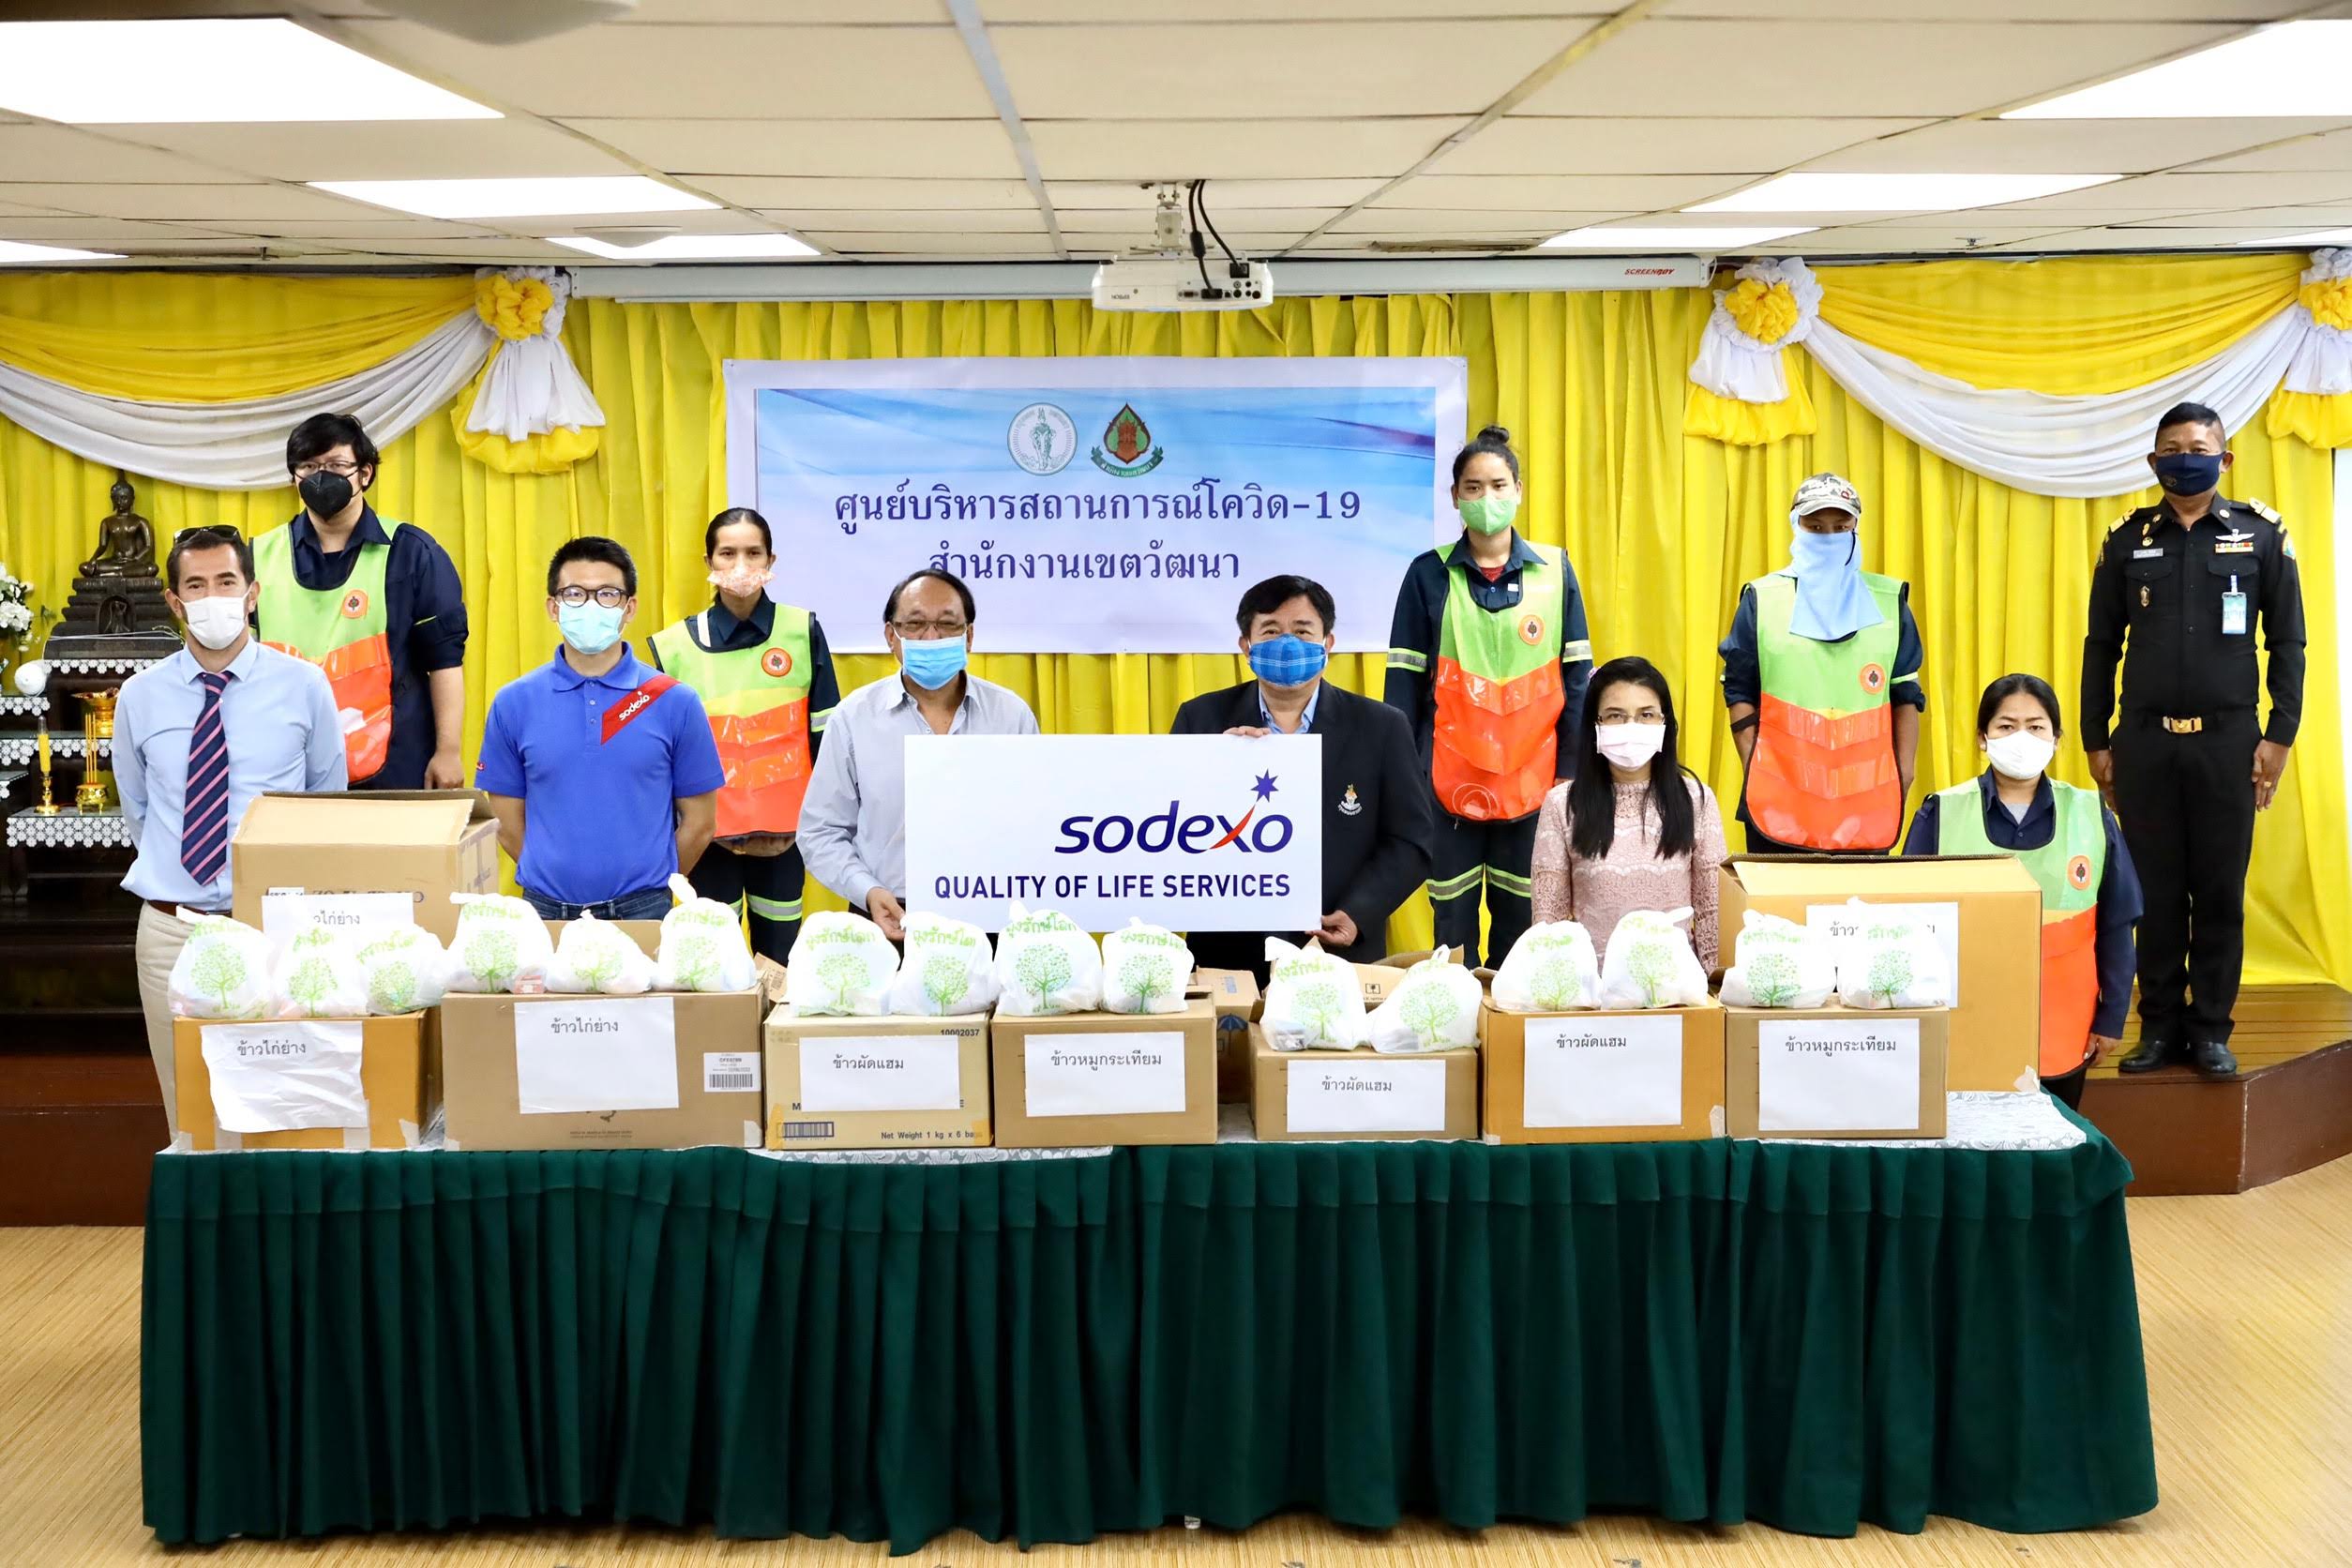 ภาพข่าว: โซเด็กซ์โซ่ ประเทศไทย ส่งมอบอาหาร 300 ชุด ให้กับพนักงานเก็บขยะ ส่งอีกหนึ่งแรงใจเพื่อการปฏิบัติหน้าที่ช่วงวิกฤติโควิด-19